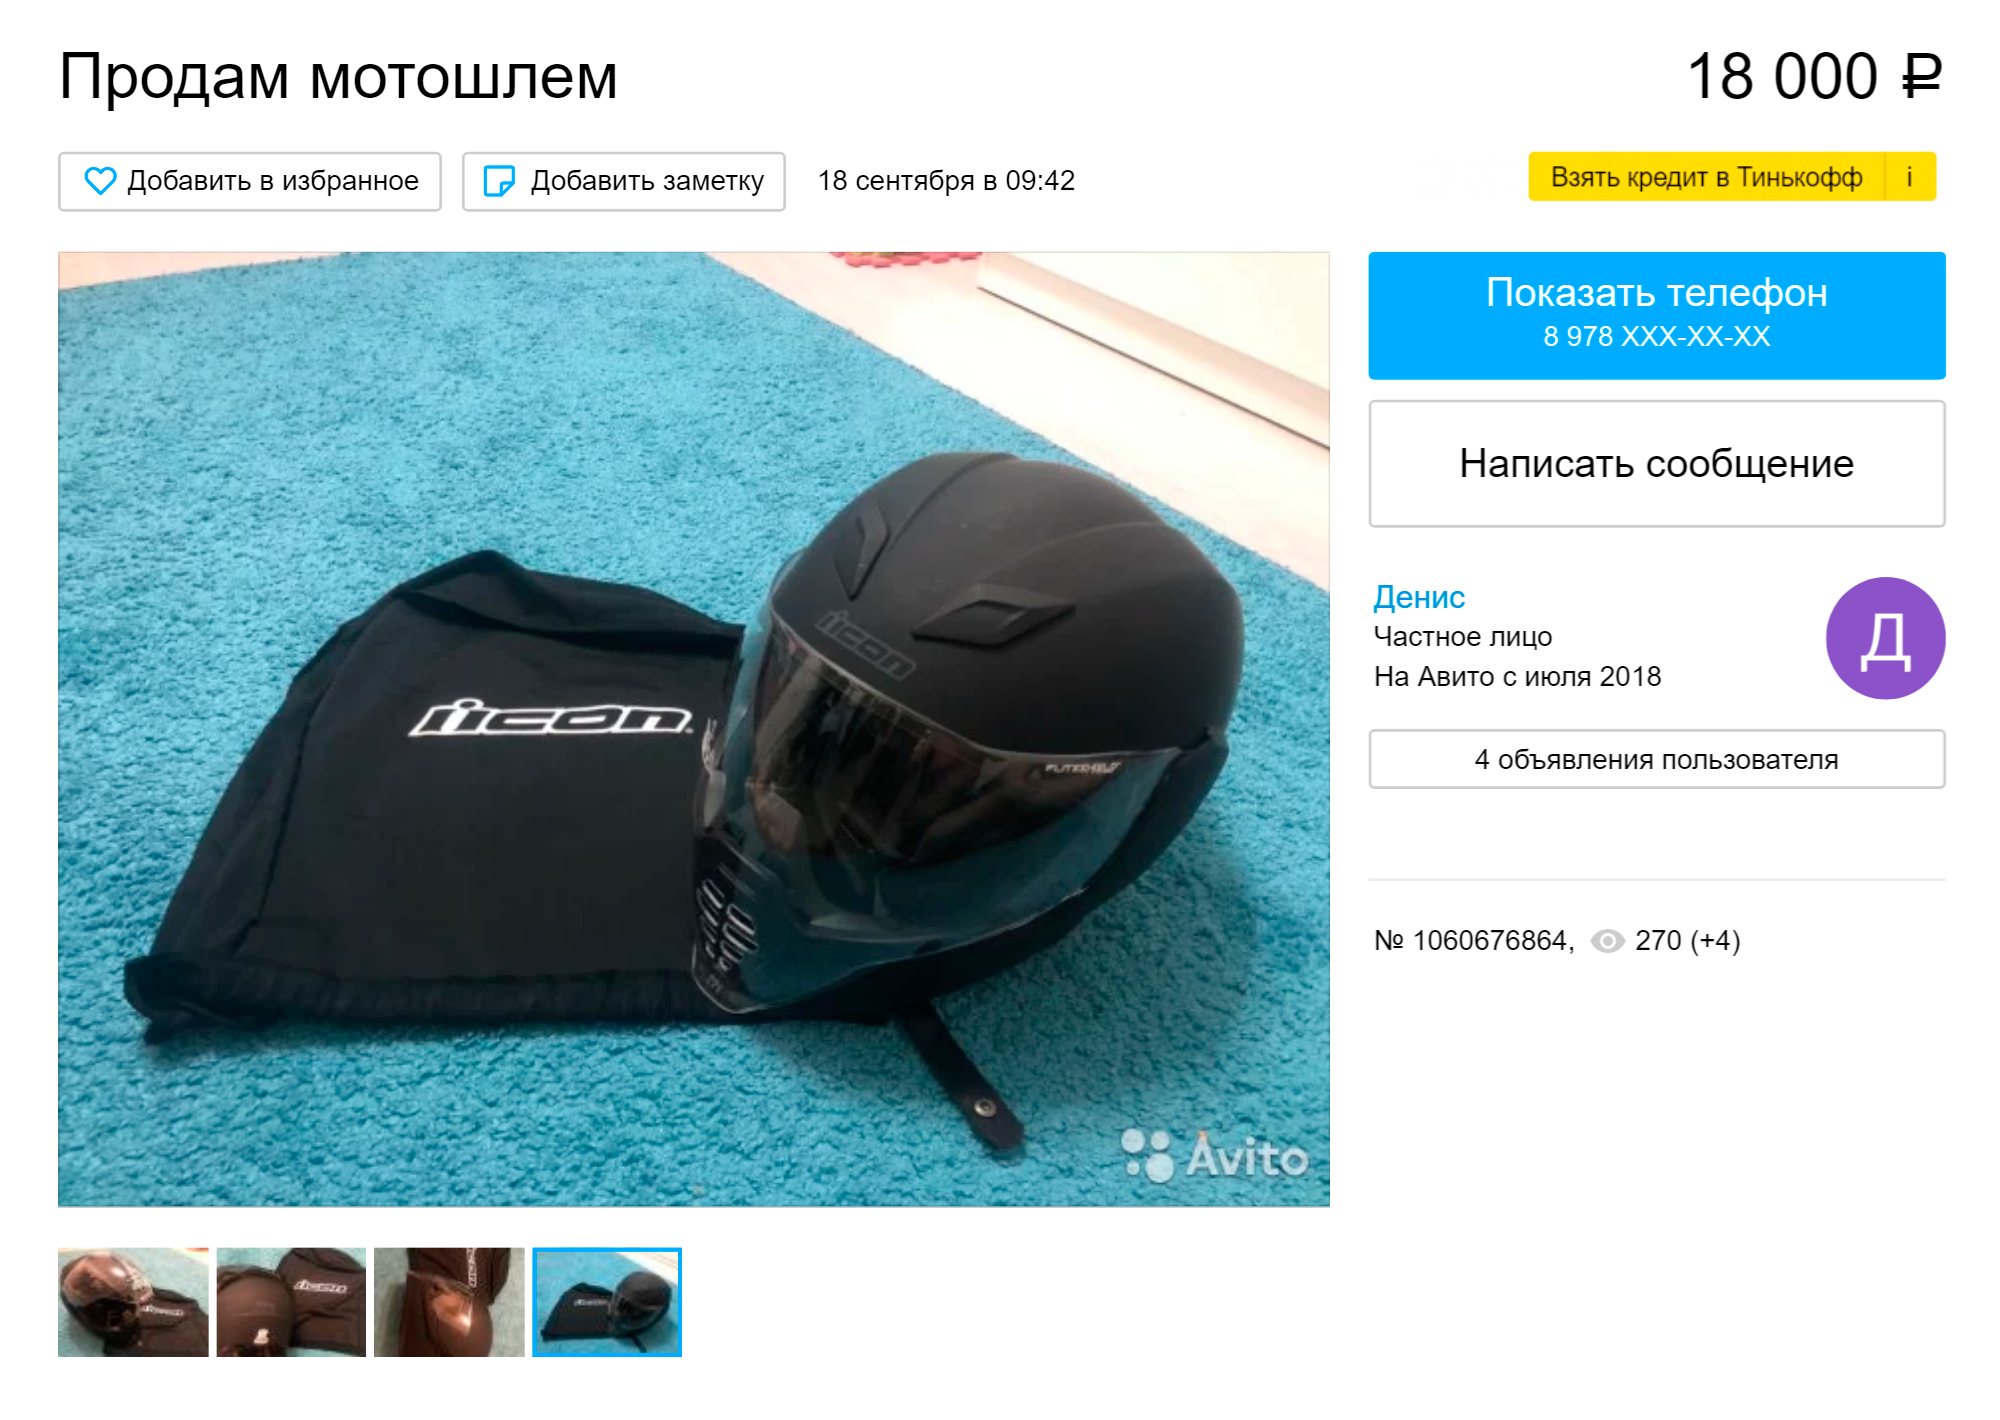 Такой же шлем, как у меня, кто-то продает на «Авито». Цена выше, чем та, по которой я купил свой новый шлем